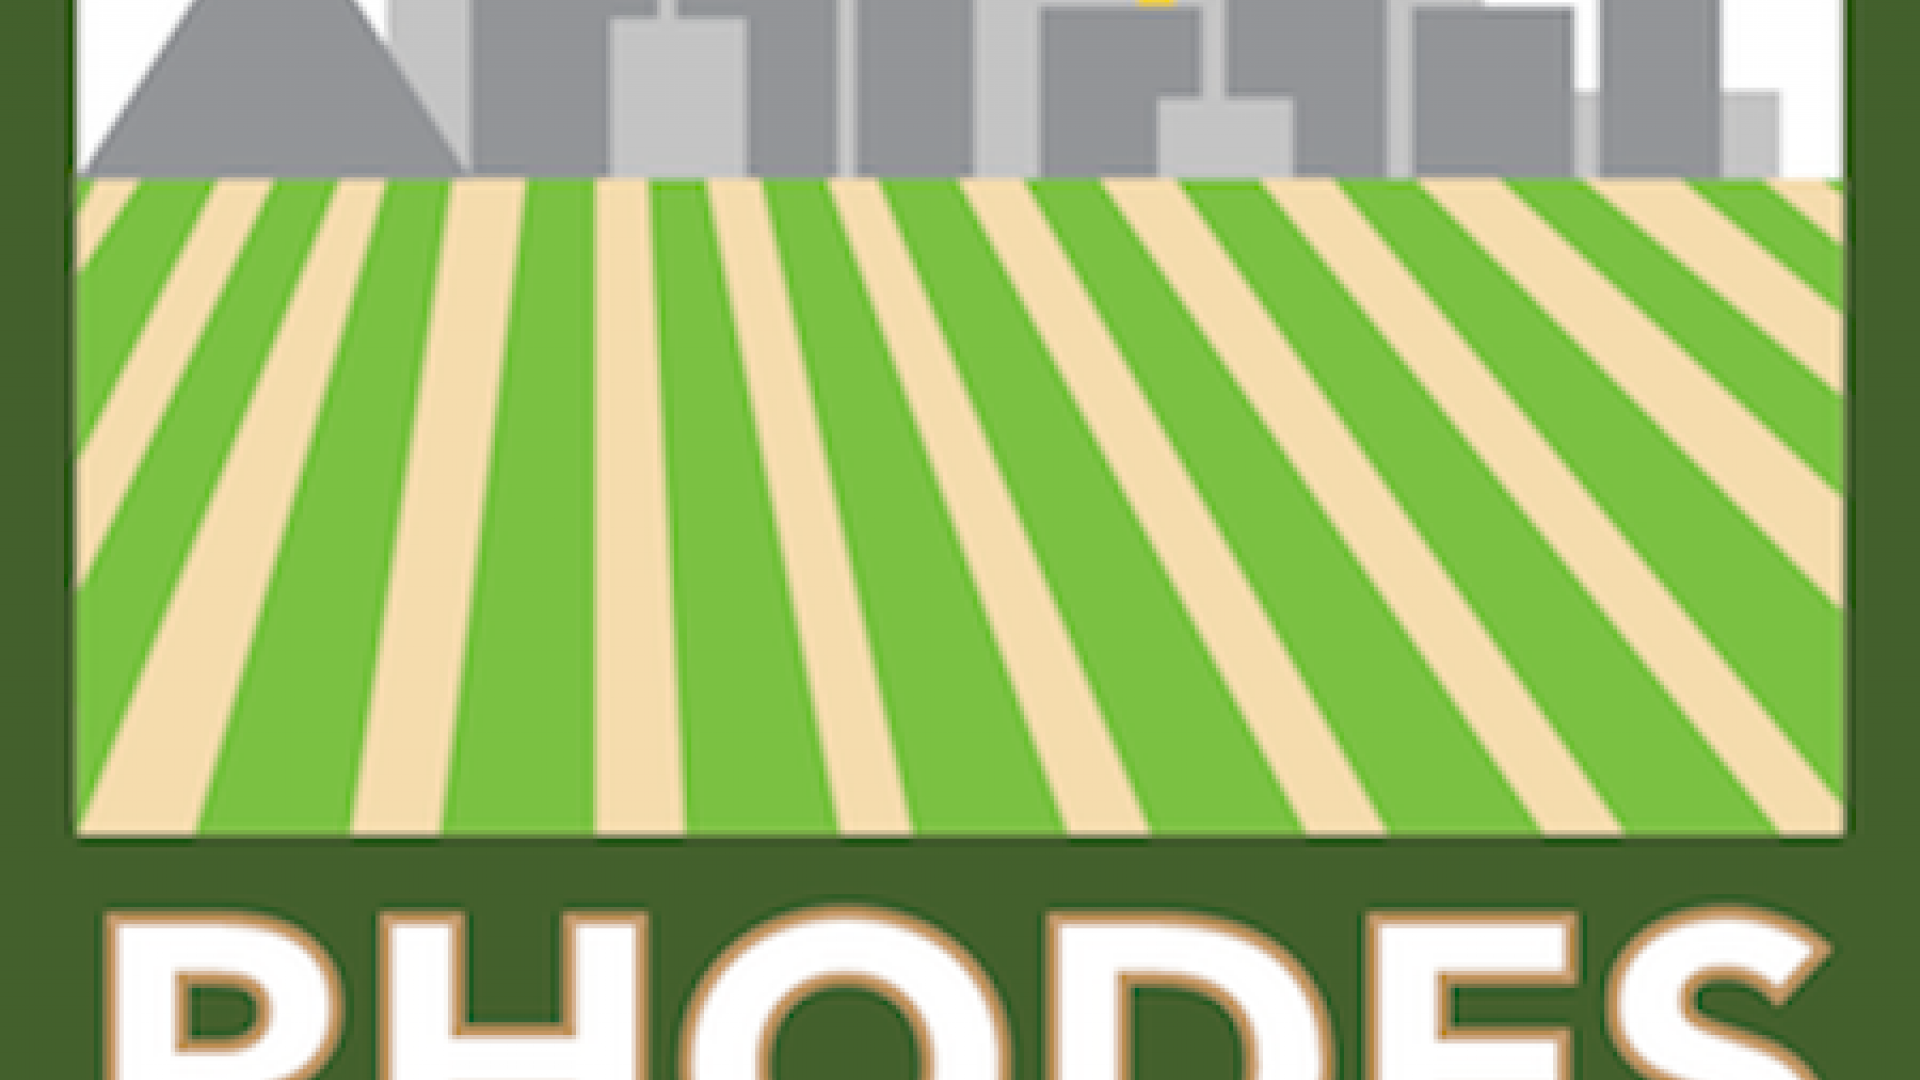 Rhodes Community Garden logo